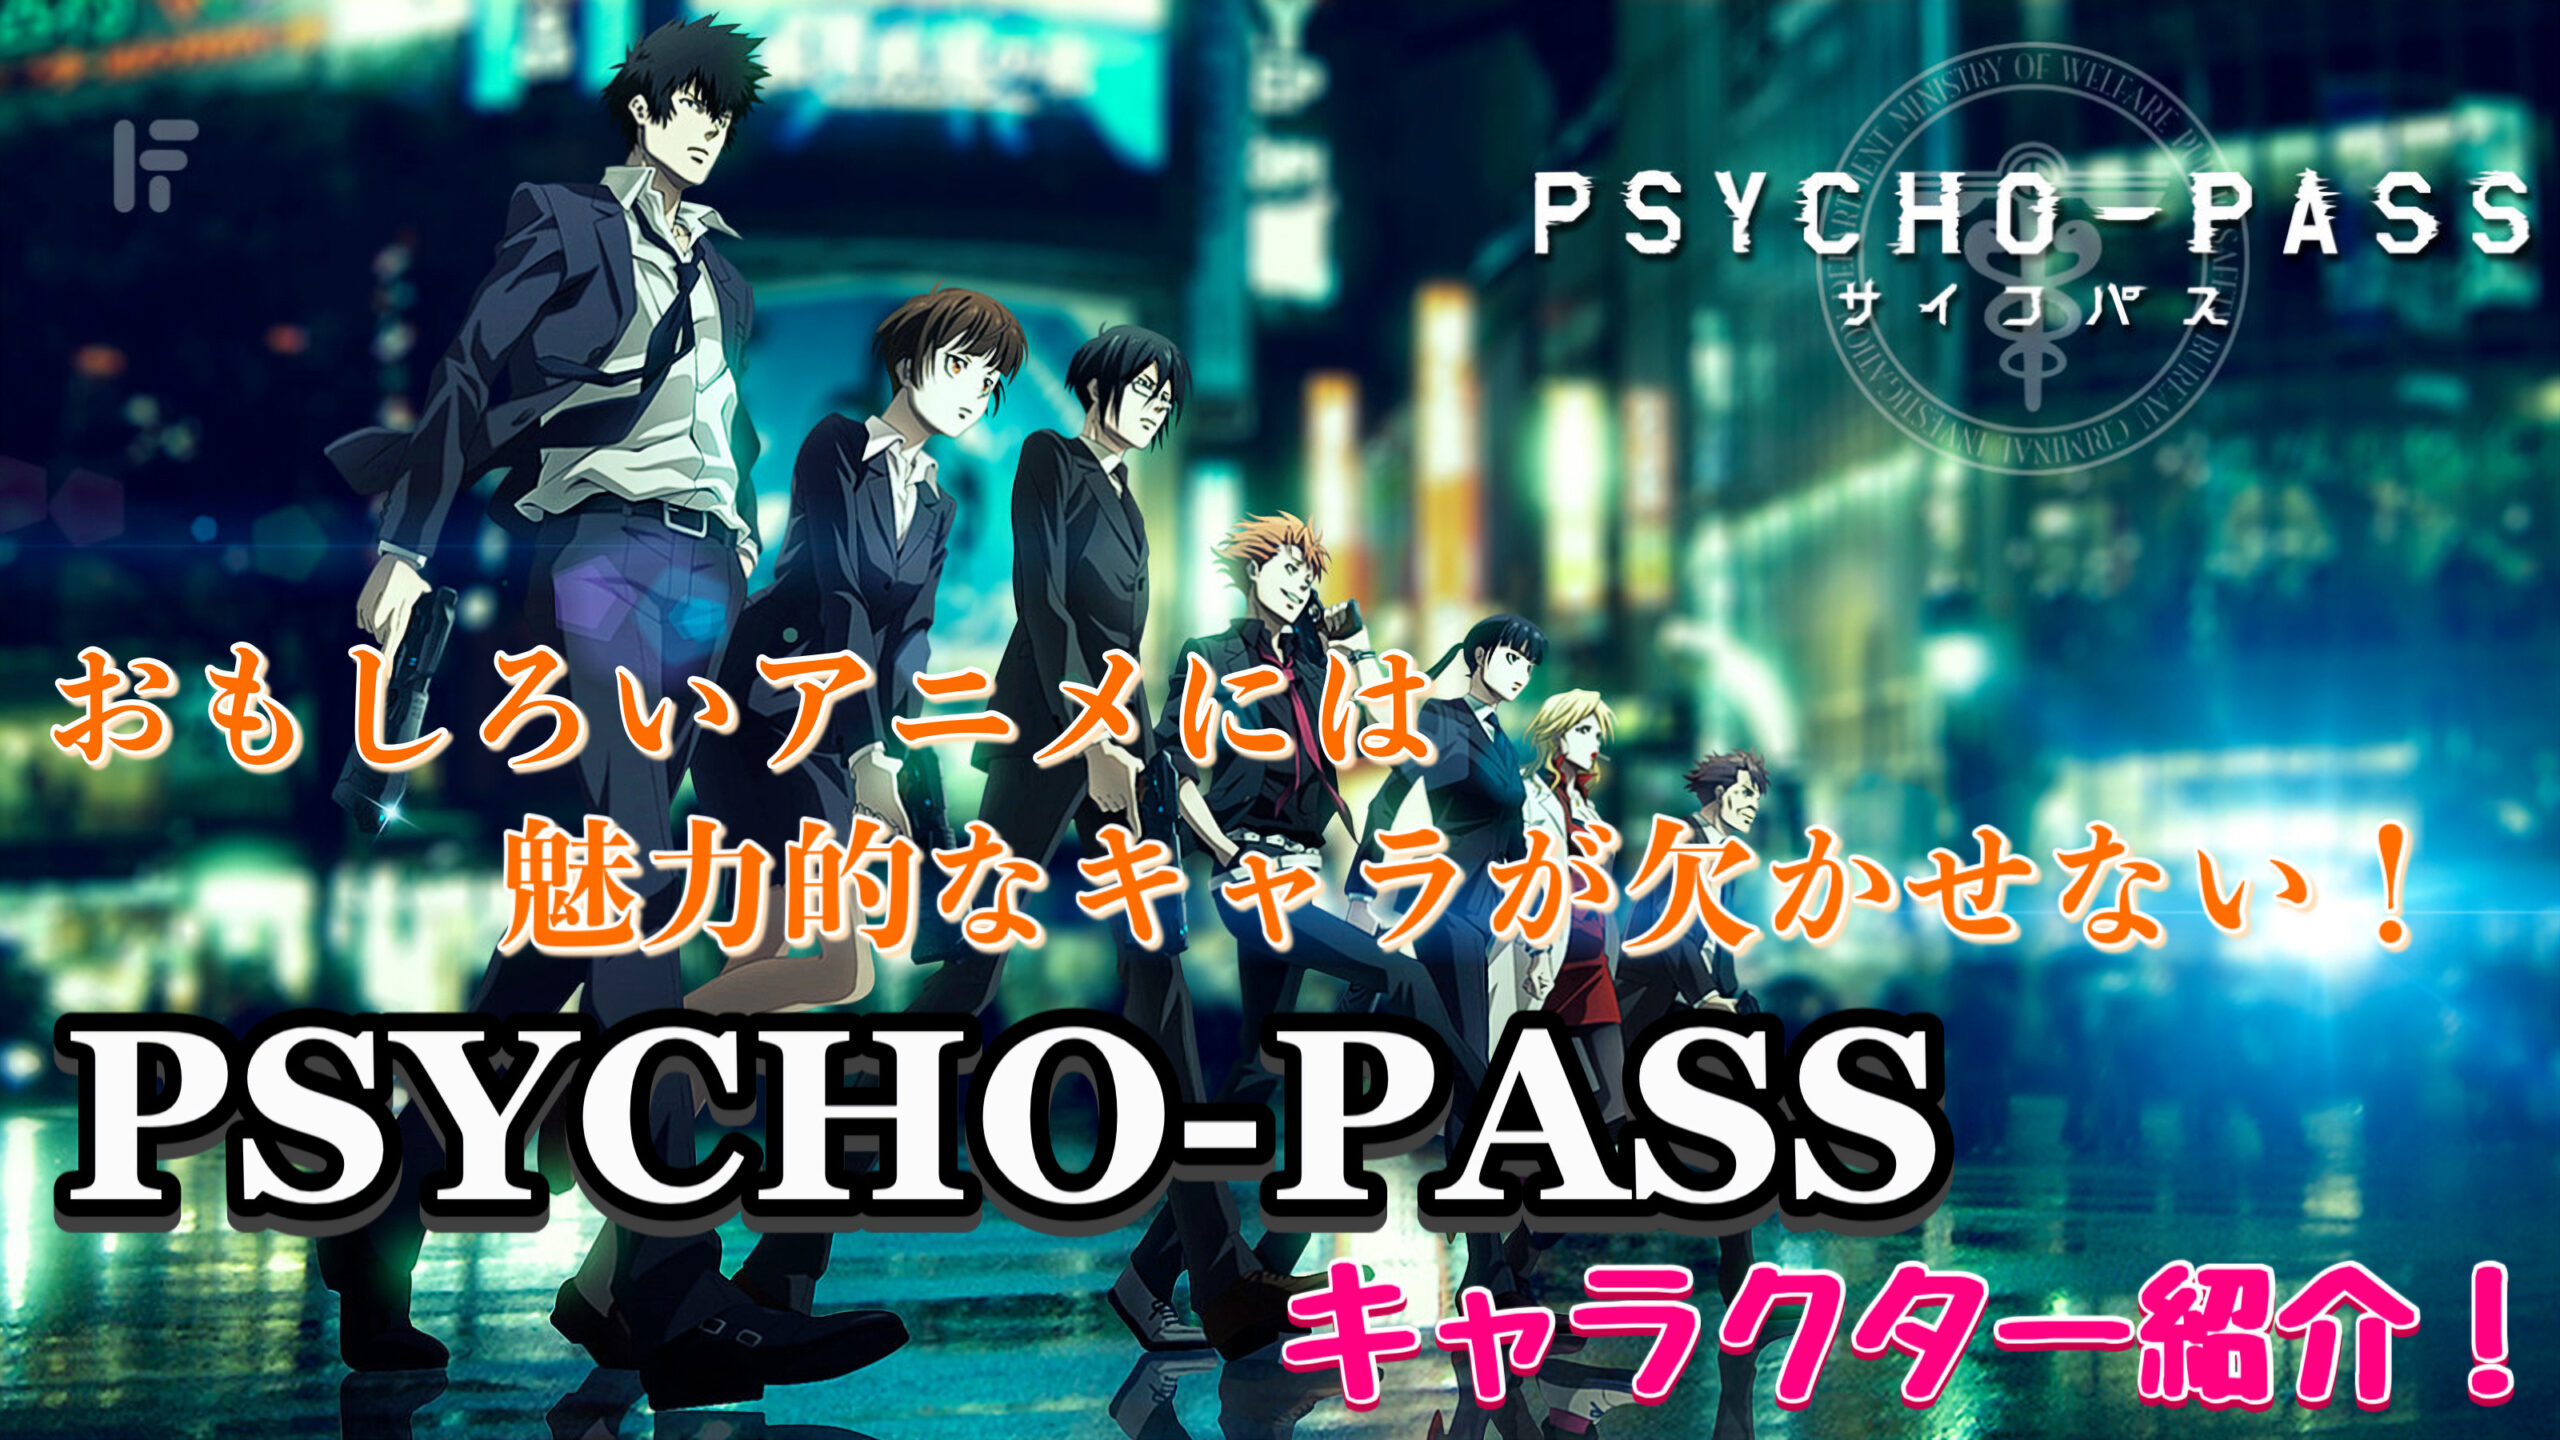 Psycho Passは面白い 順番は 作品の評価 解説 考察 おすすめポイント 旅狼のレビュー小屋